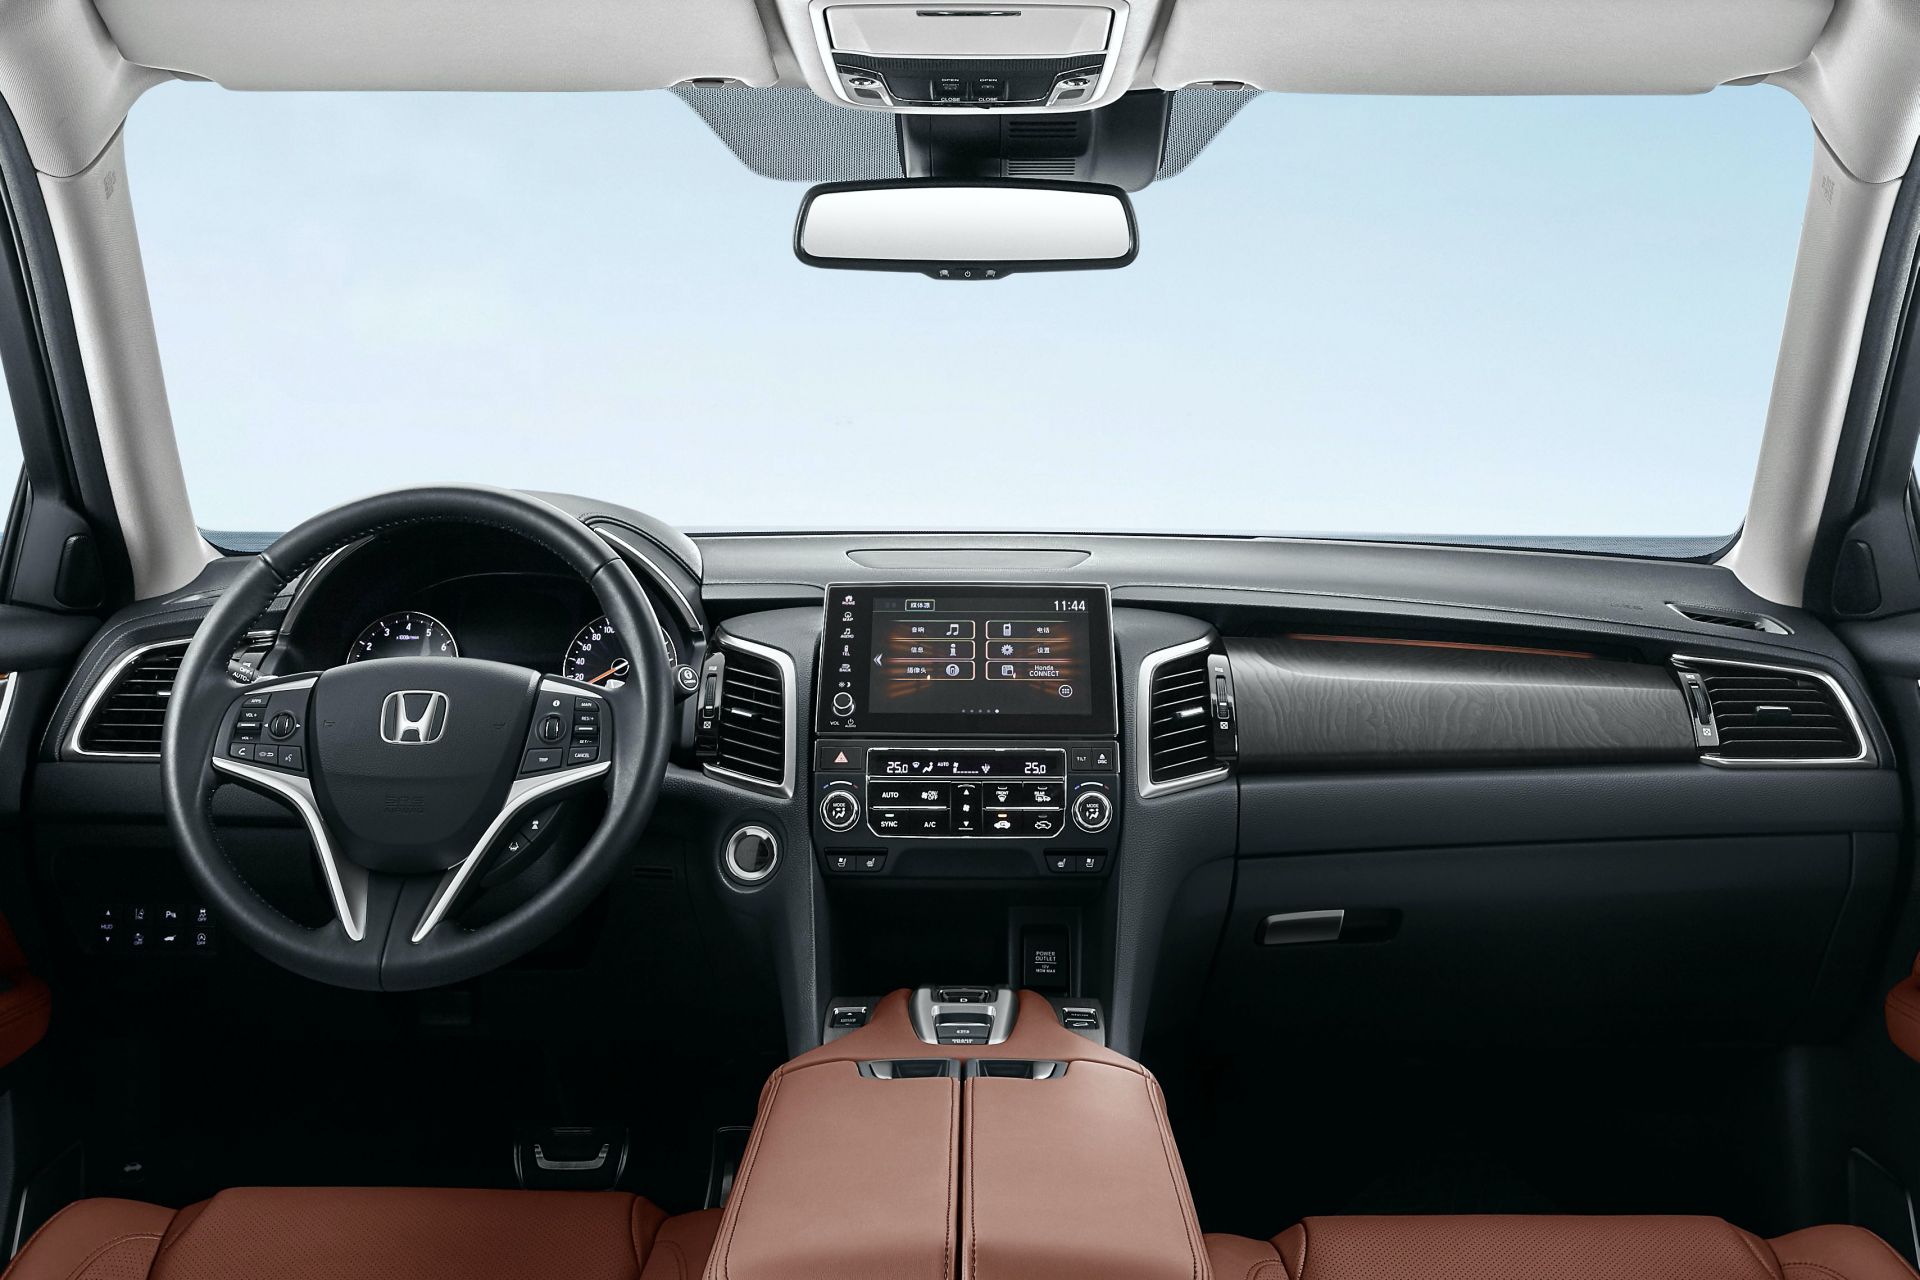 Mẫu SUV hàng đầu Avancier 2020 của Honda nhận được nâng cấp vượt trội